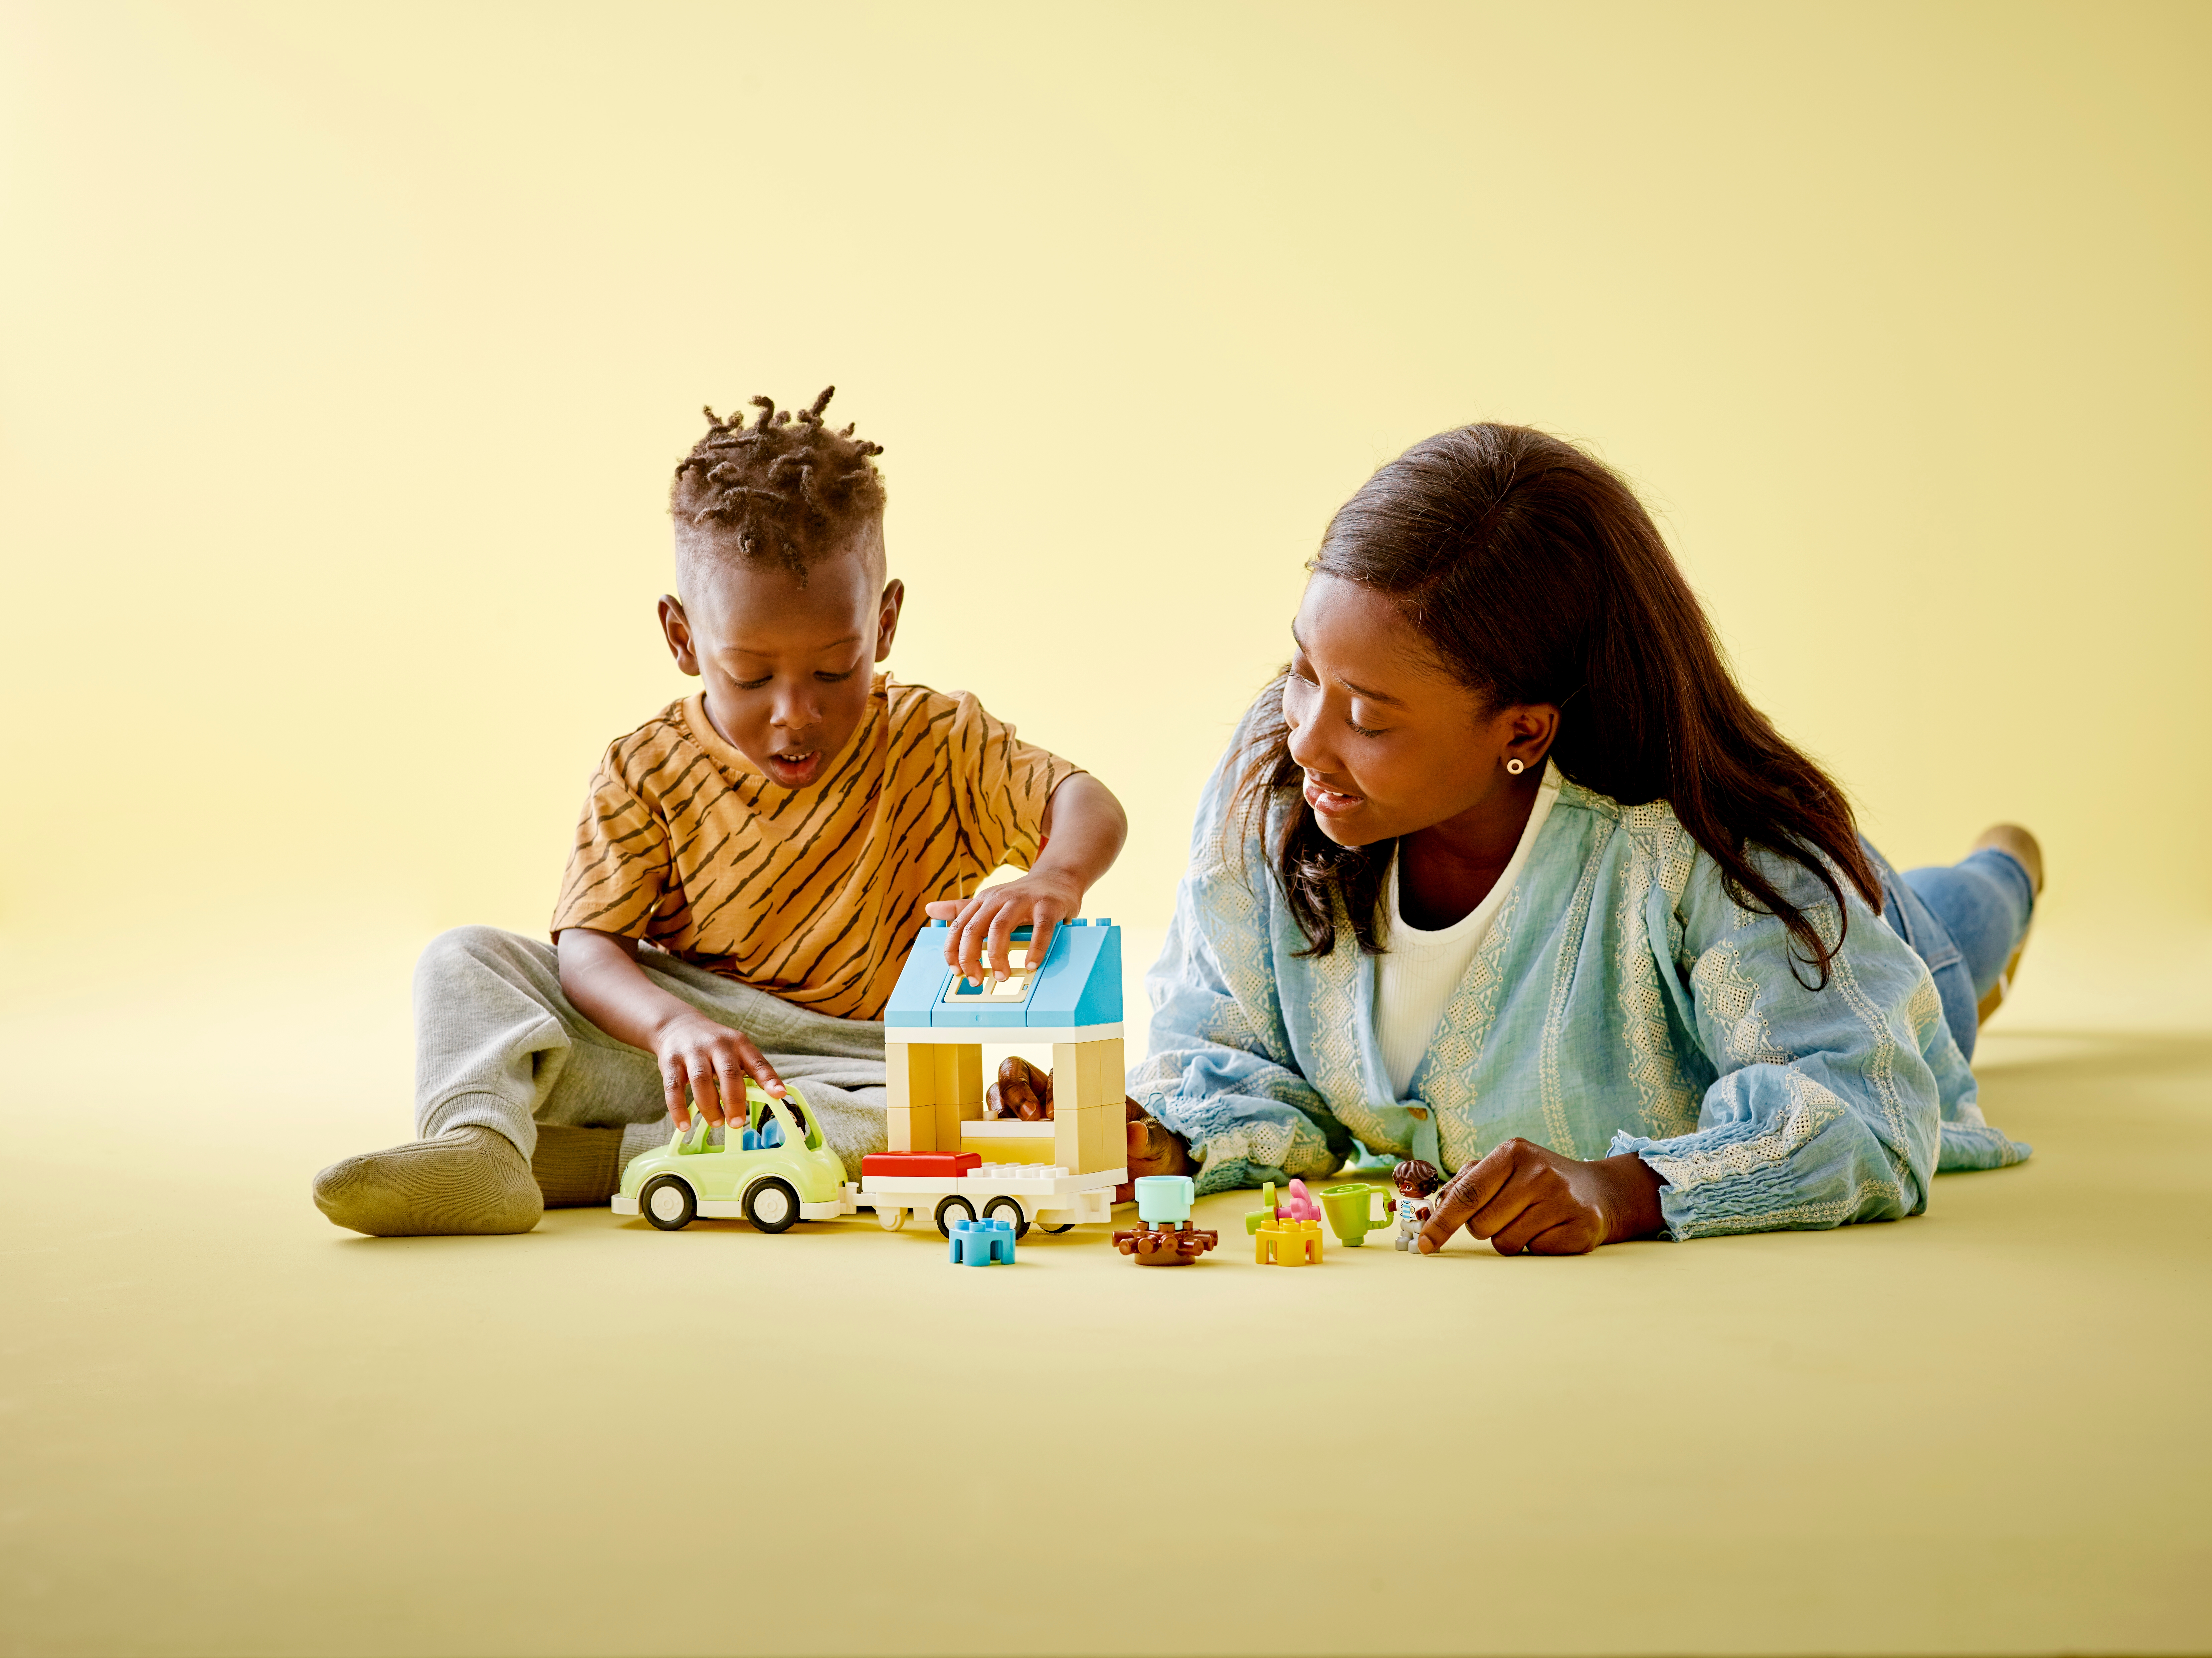 3歳の男の子にぴったりのおもちゃ |レゴ®ショップ公式オンラインストアJP